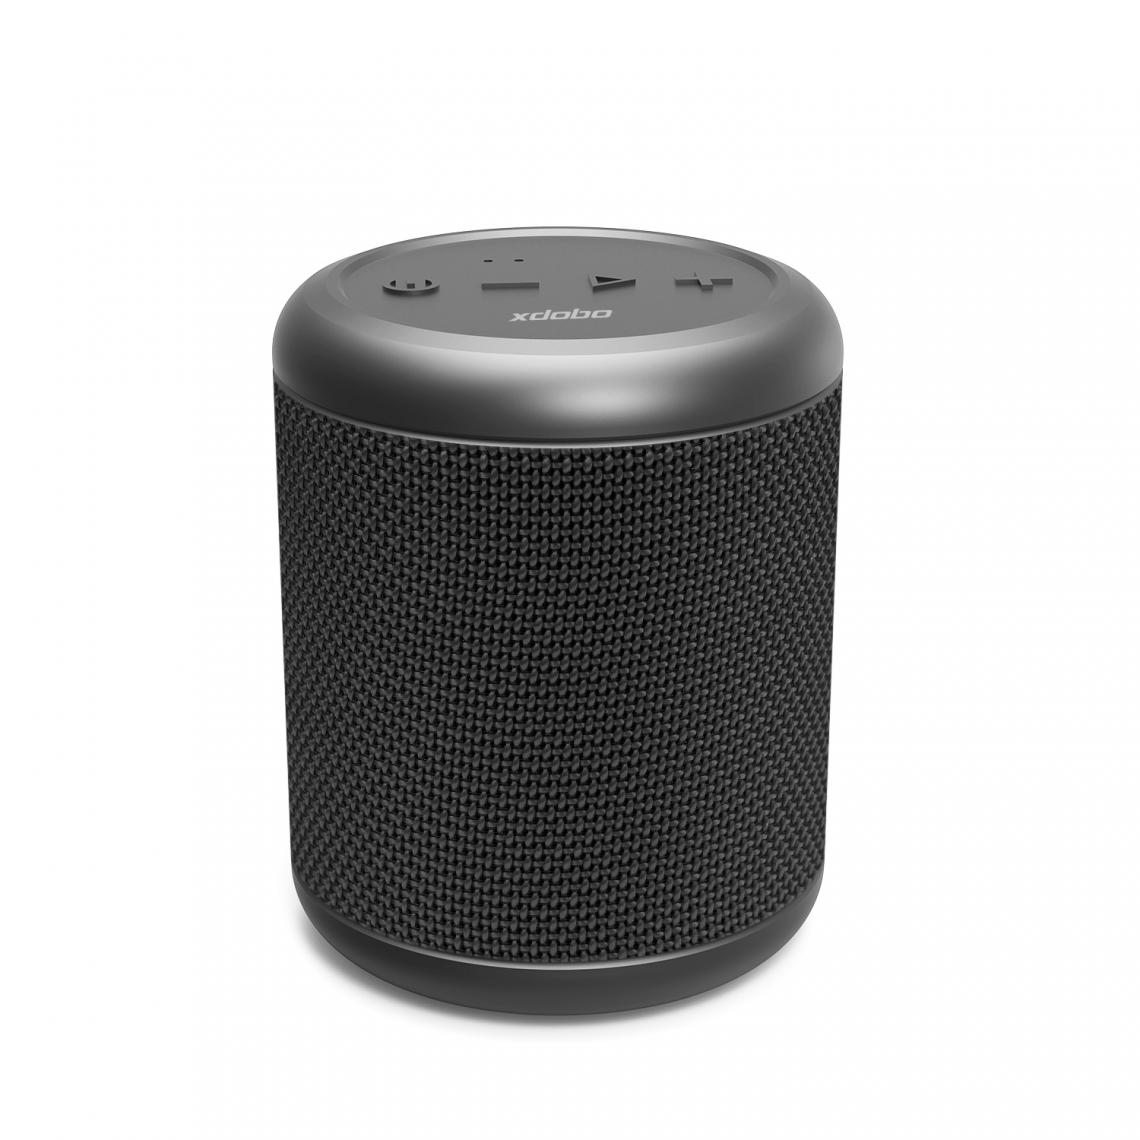 Universal - Mini haut-parleur Bluetooth Haut-parleur IPX6 haut-parleur portable sans fil Subwoofer avec son surround à 360 degrés, assistant vocal | Haut-pareilleur portable (noir) - Hauts-parleurs